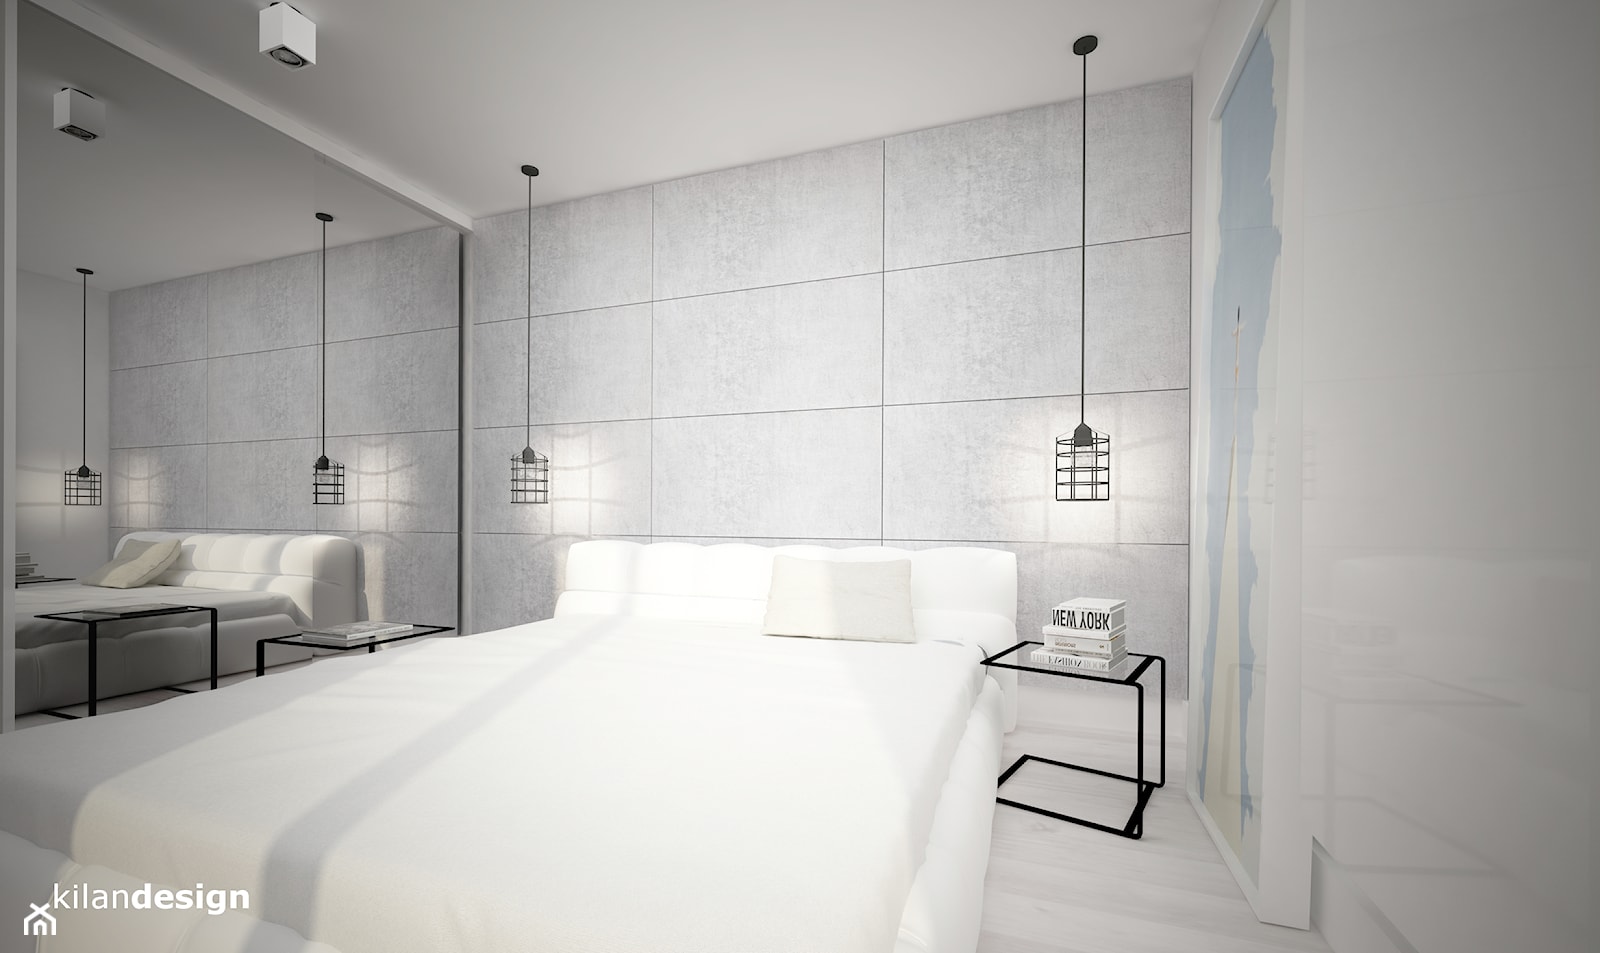 APARTAMENT W KRAKOWIE - Mała biała sypialnia, styl skandynawski - zdjęcie od kilandesign - Homebook